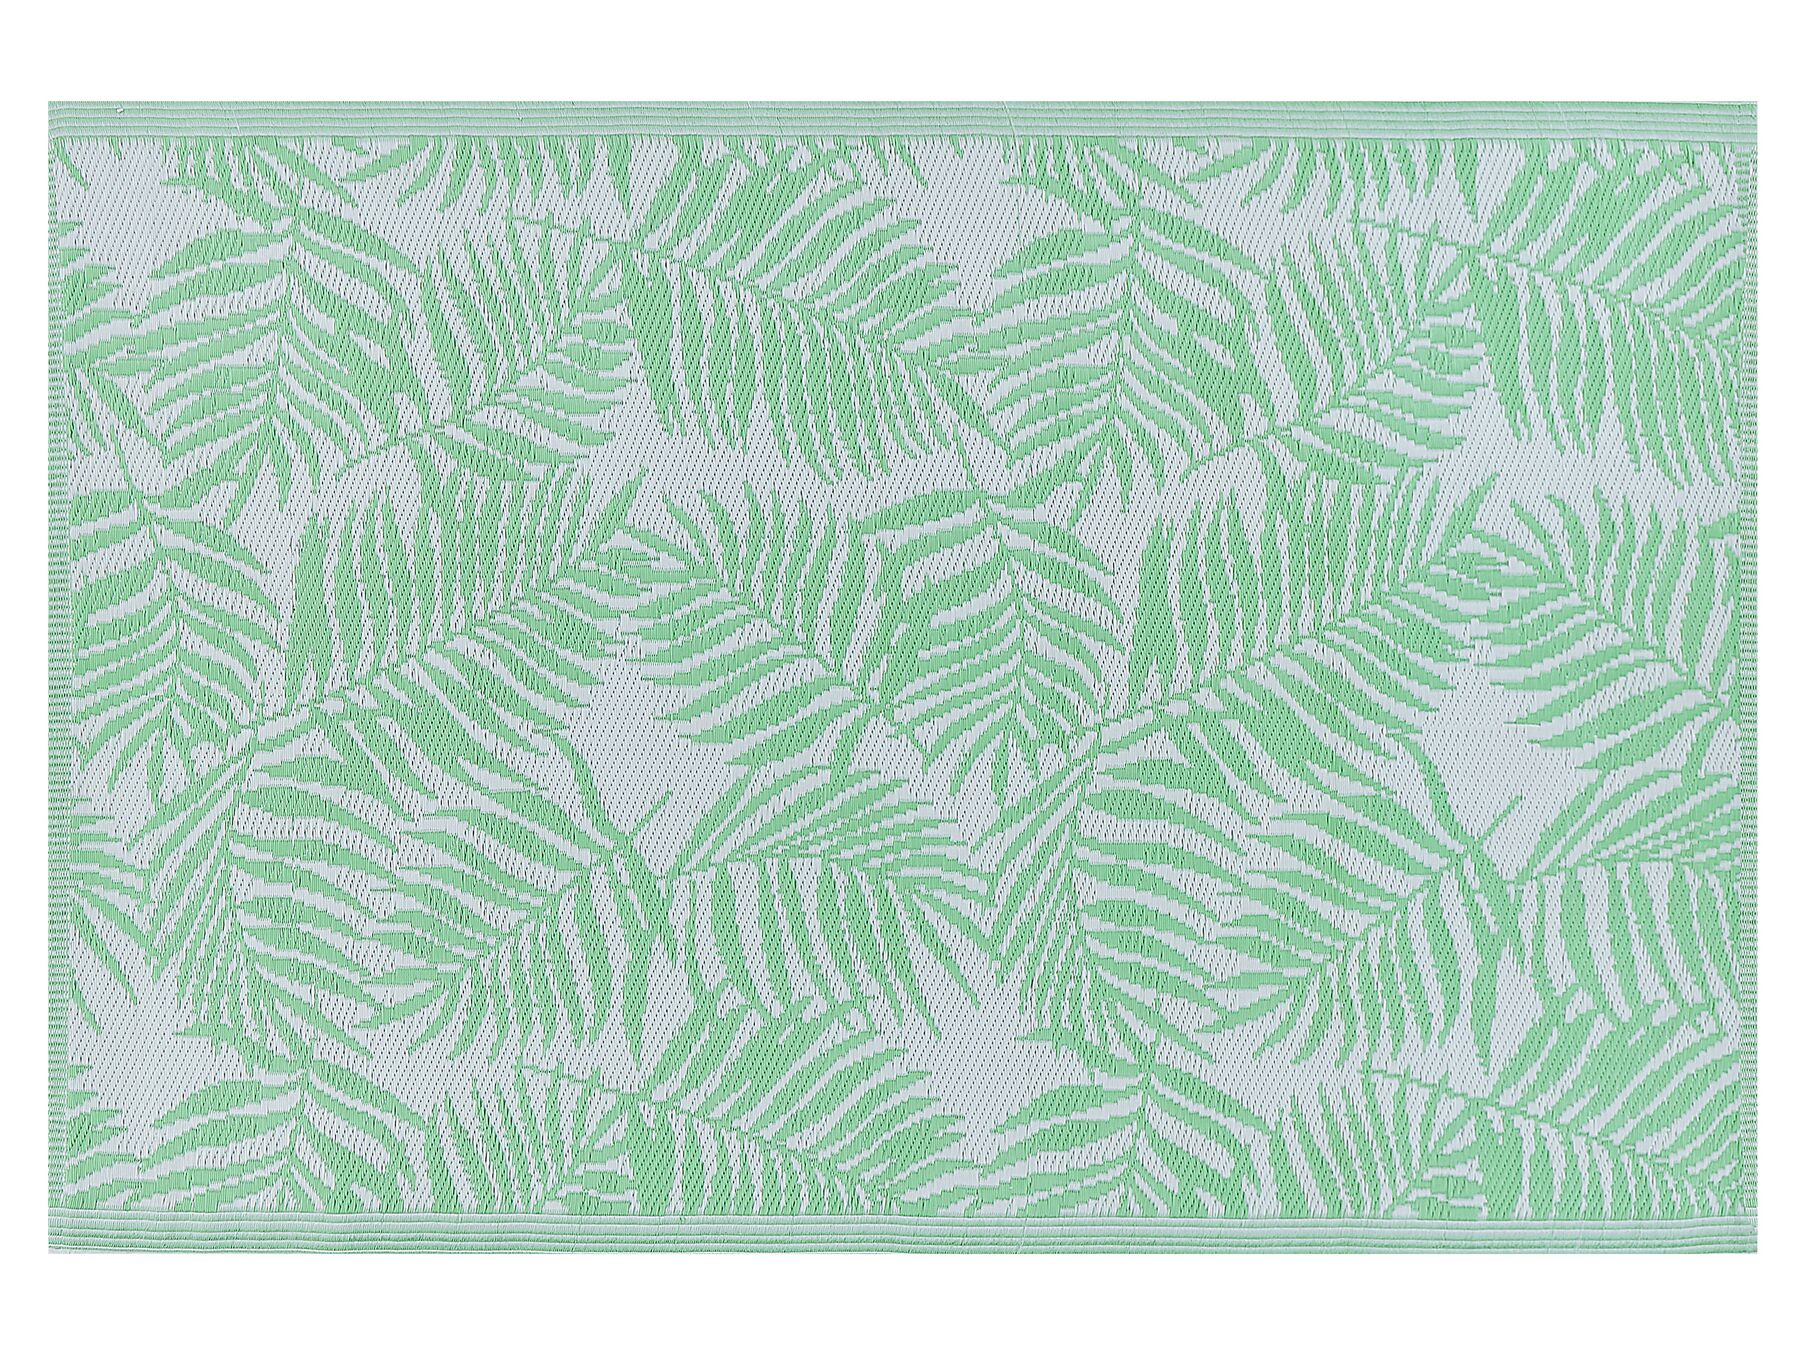 KOTA világoszöld-fehér kültéri szőnyeg 120 x 180 cm 21164 B